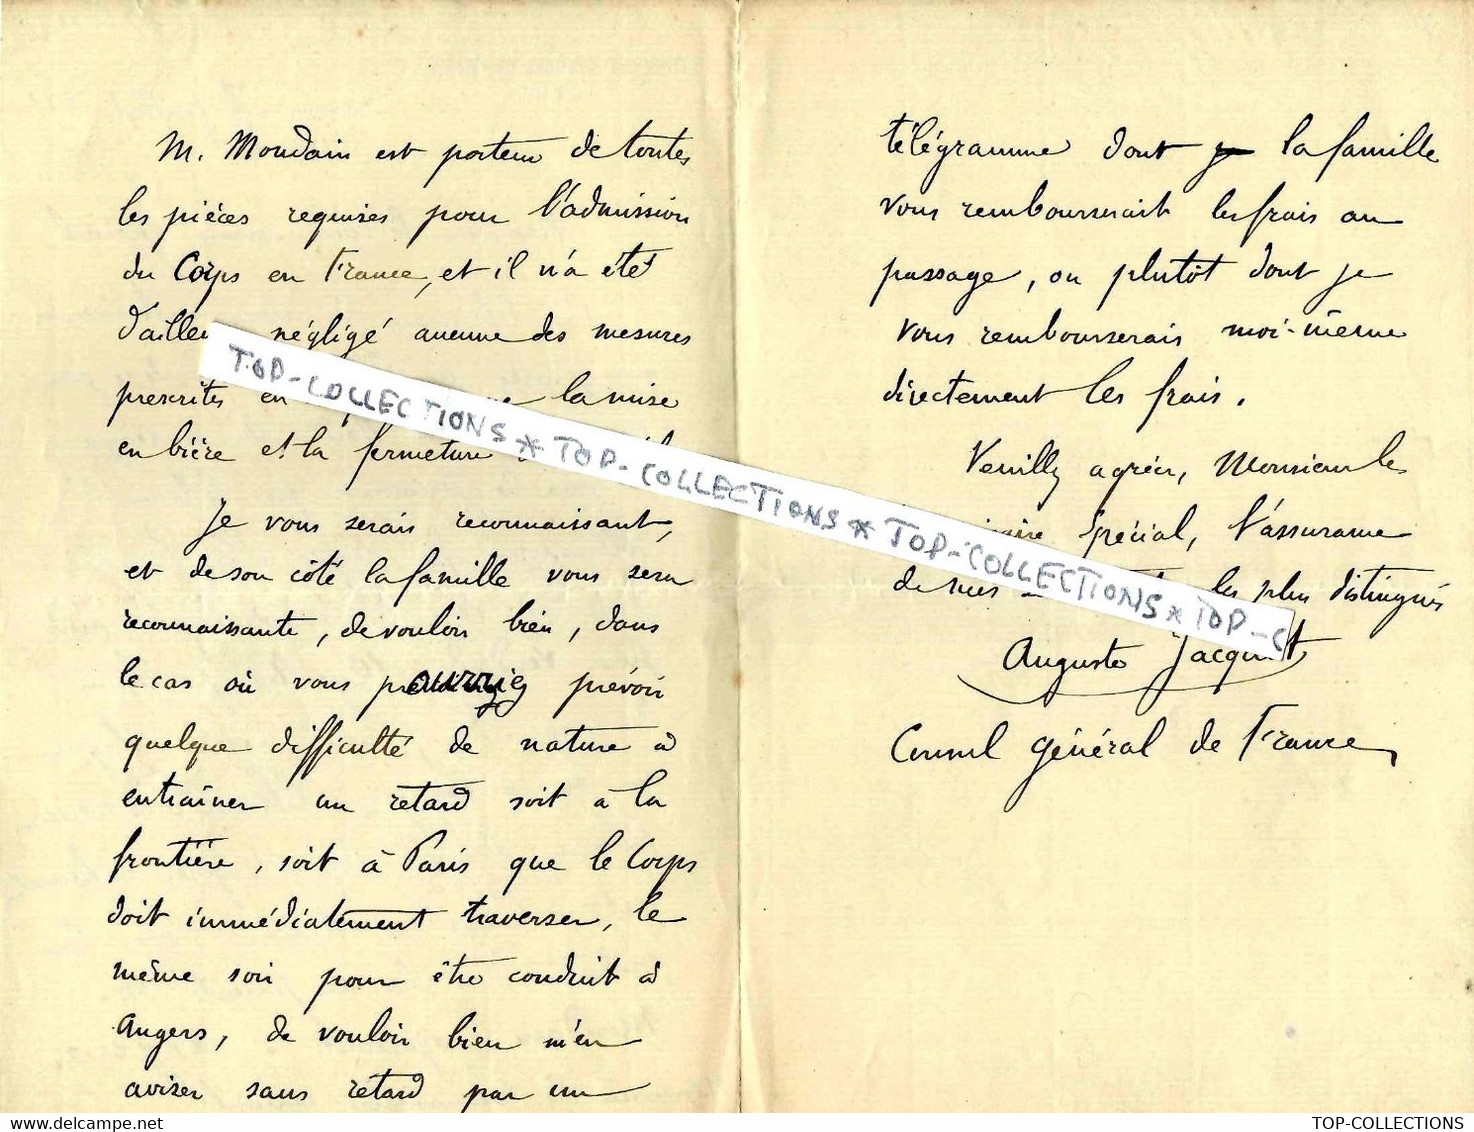 1896 DIPLOMATIE CONSUL GENERAL DE France à LEIPZIG ALLEMAGNE FRANÇAIS  DECEDE CORPS VERS France Sign.   A.JACQUOT - Historical Documents